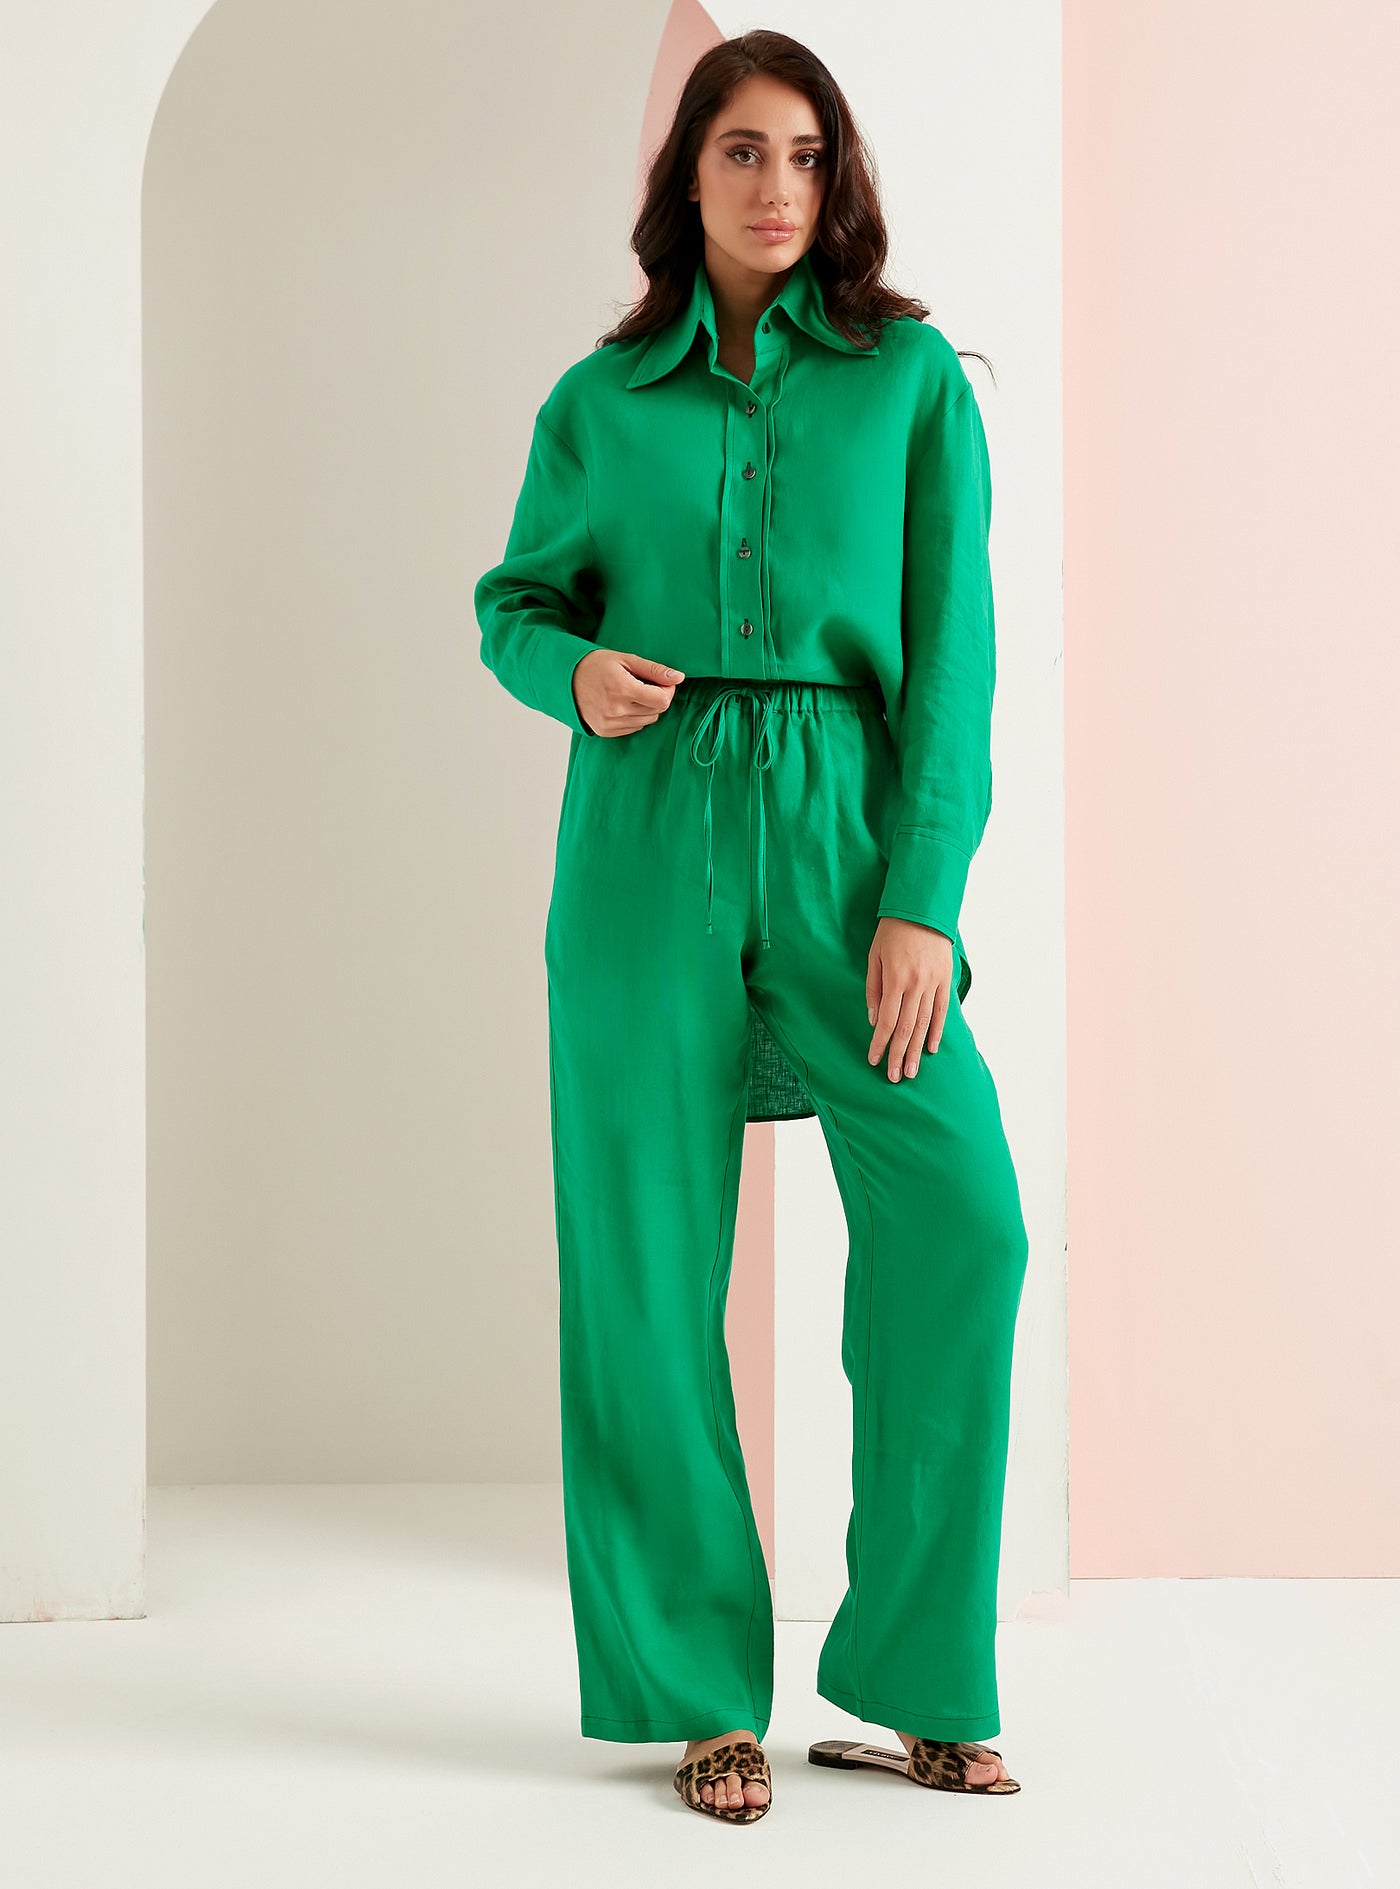 100% Linen Green 2 Piece Shirt And Trouser Set